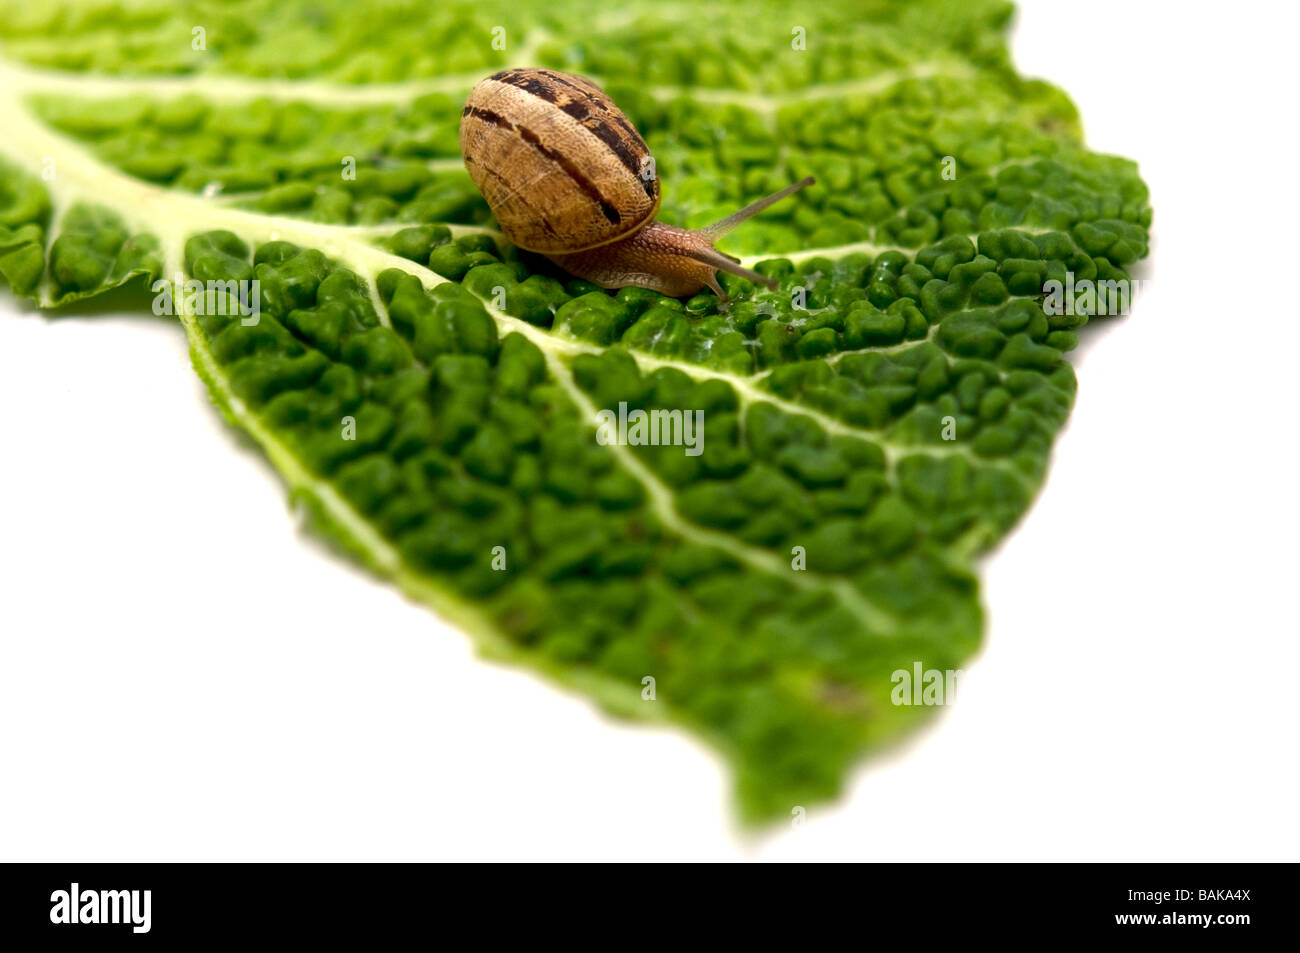 Un escargot Helix pomatia sur une feuille sur un fond blanc Banque D'Images